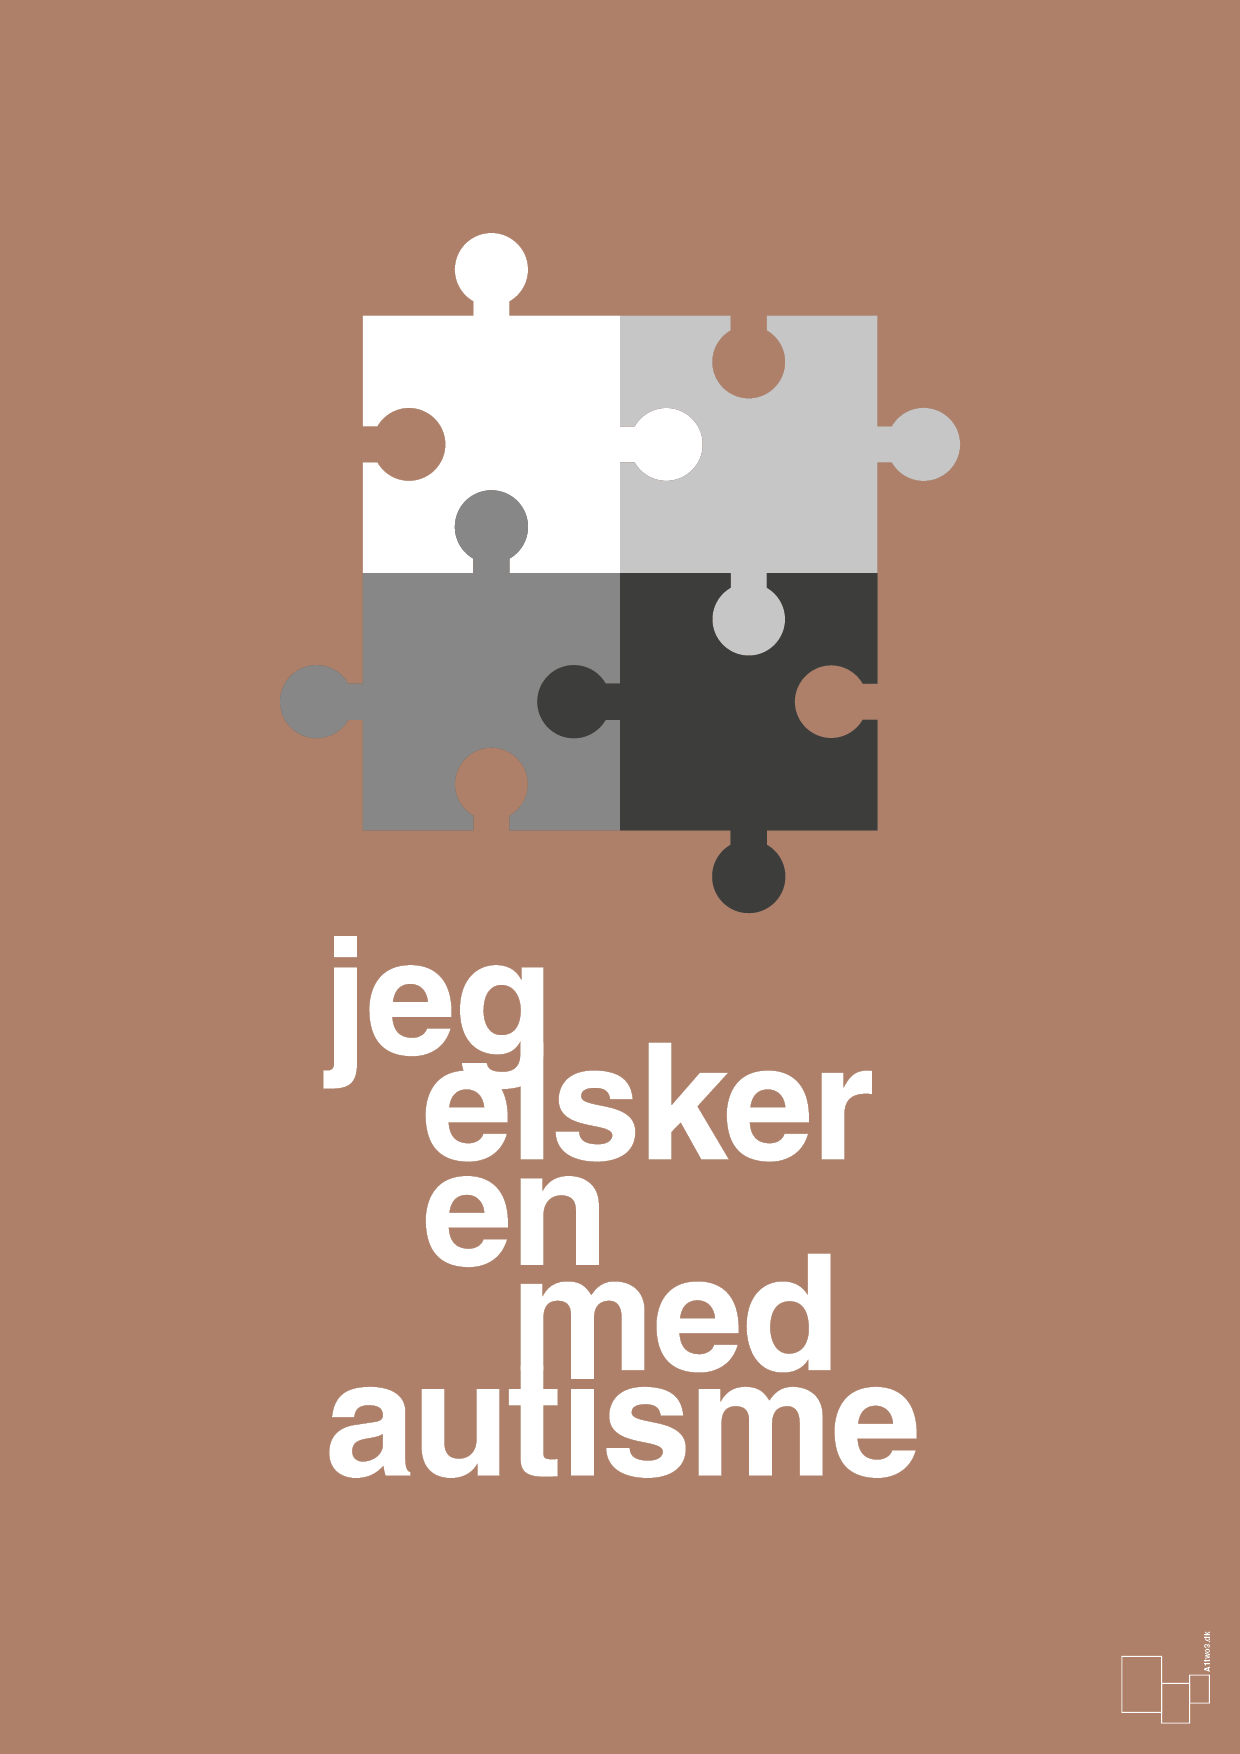 jeg elsker en med autisme - Plakat med Samfund i Cider Spice